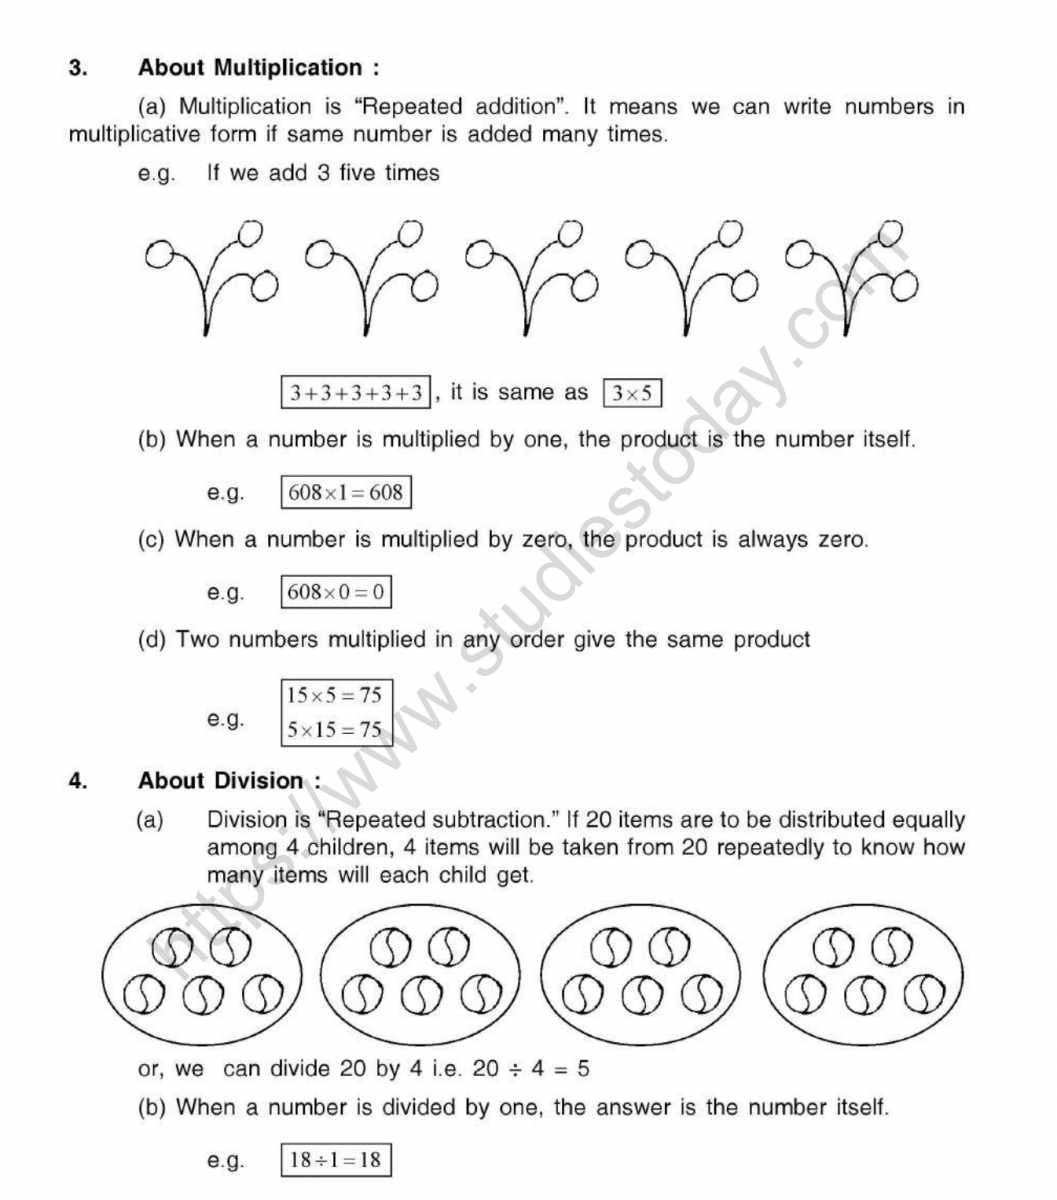 mental maths worksheets